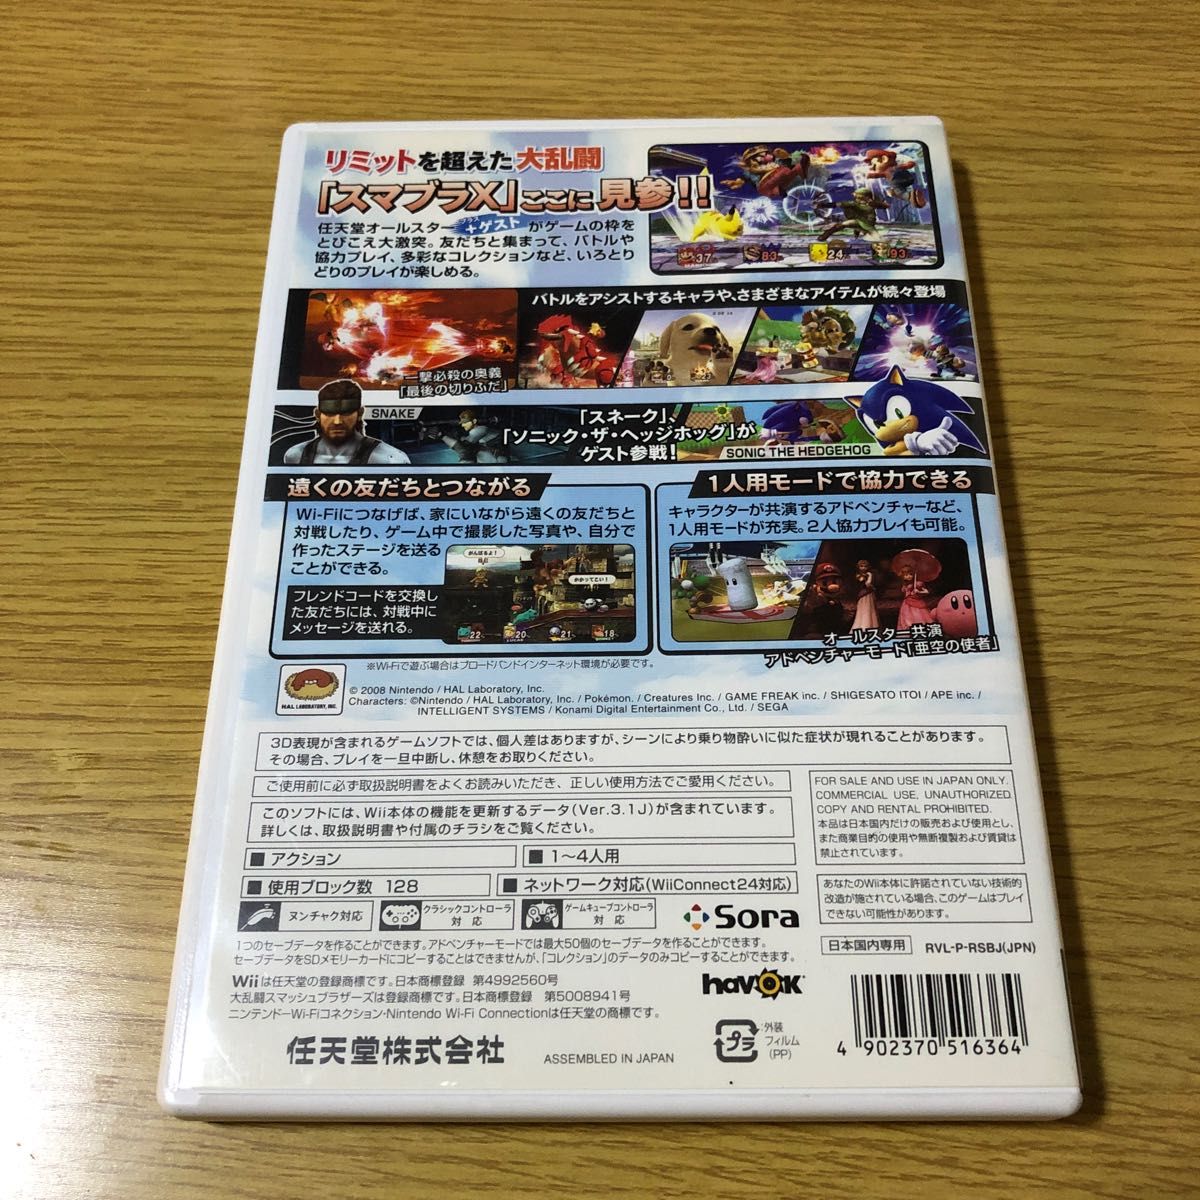 大乱闘スマッシュブラザーズX Wii、Newスーパーマリオブラザーズ Wii